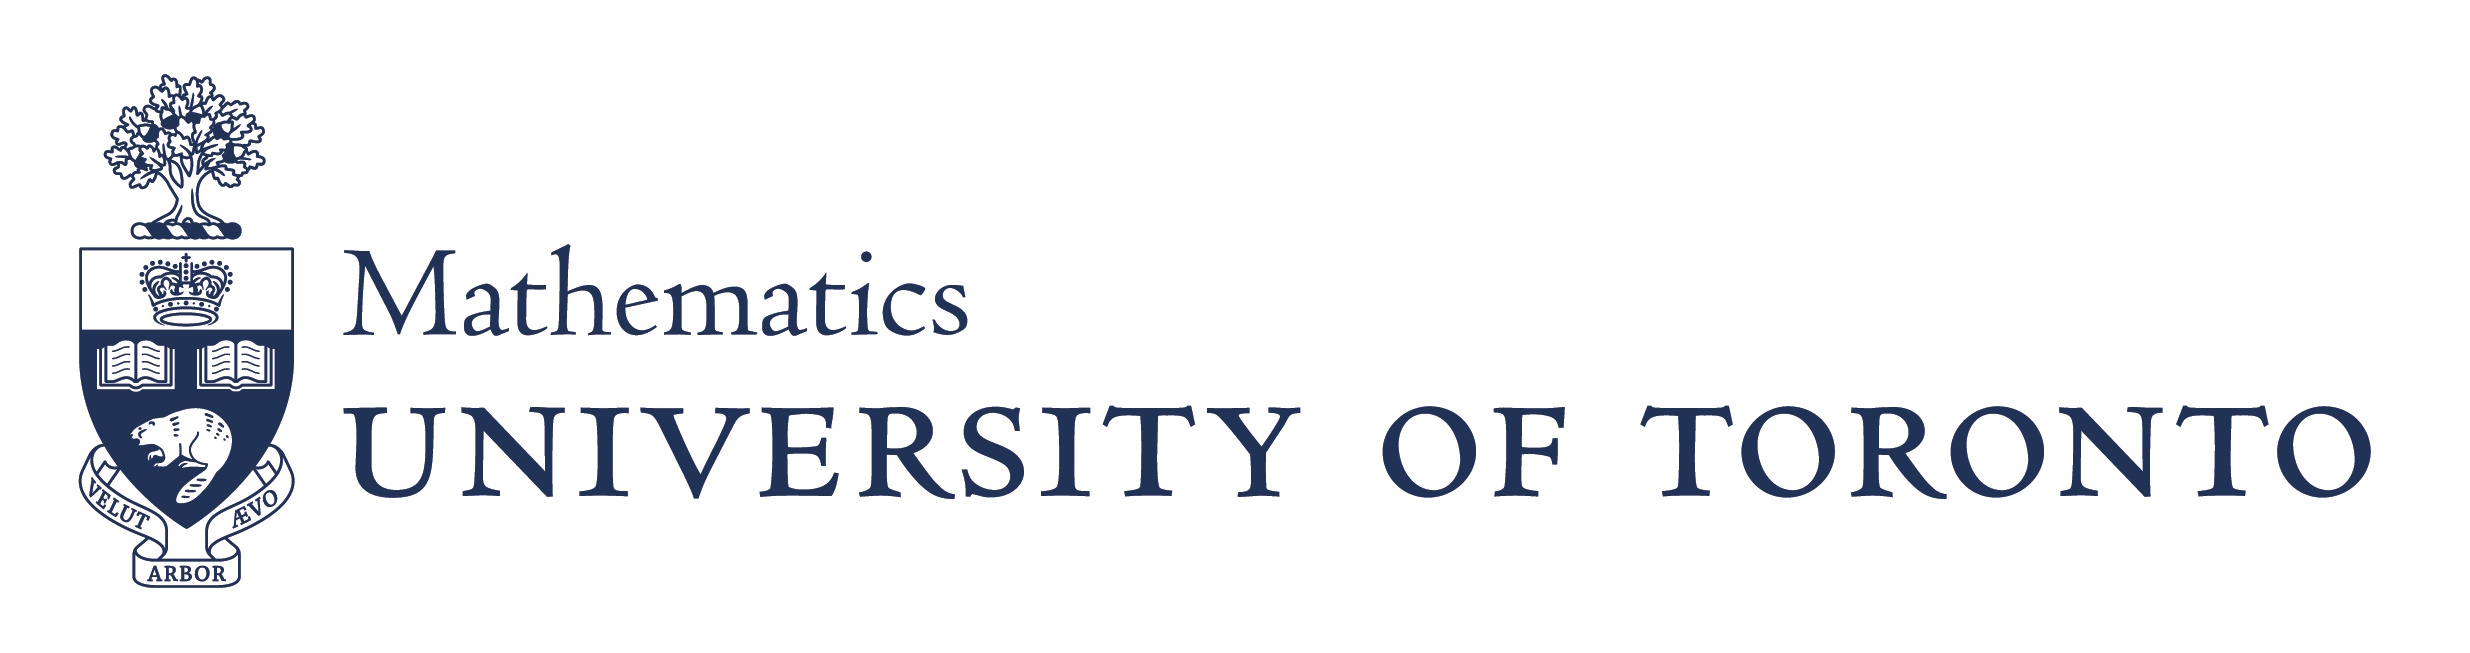 UofT math department logo